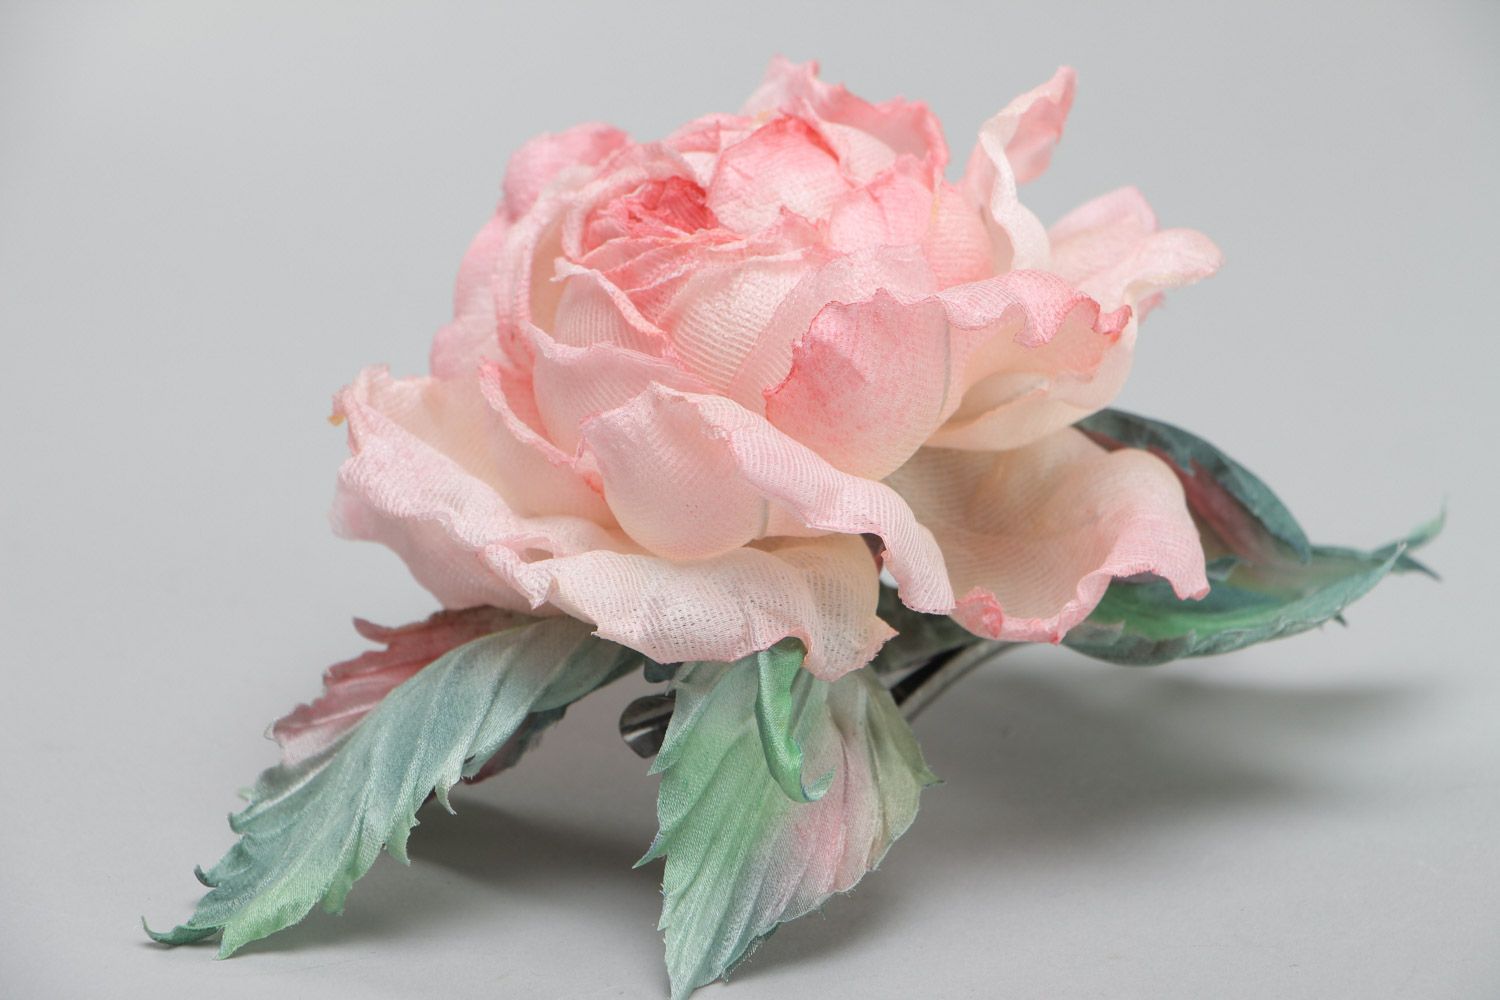 Брошь в виде розы крупная розовая романтичная изящная красивая ручной работы фото 3